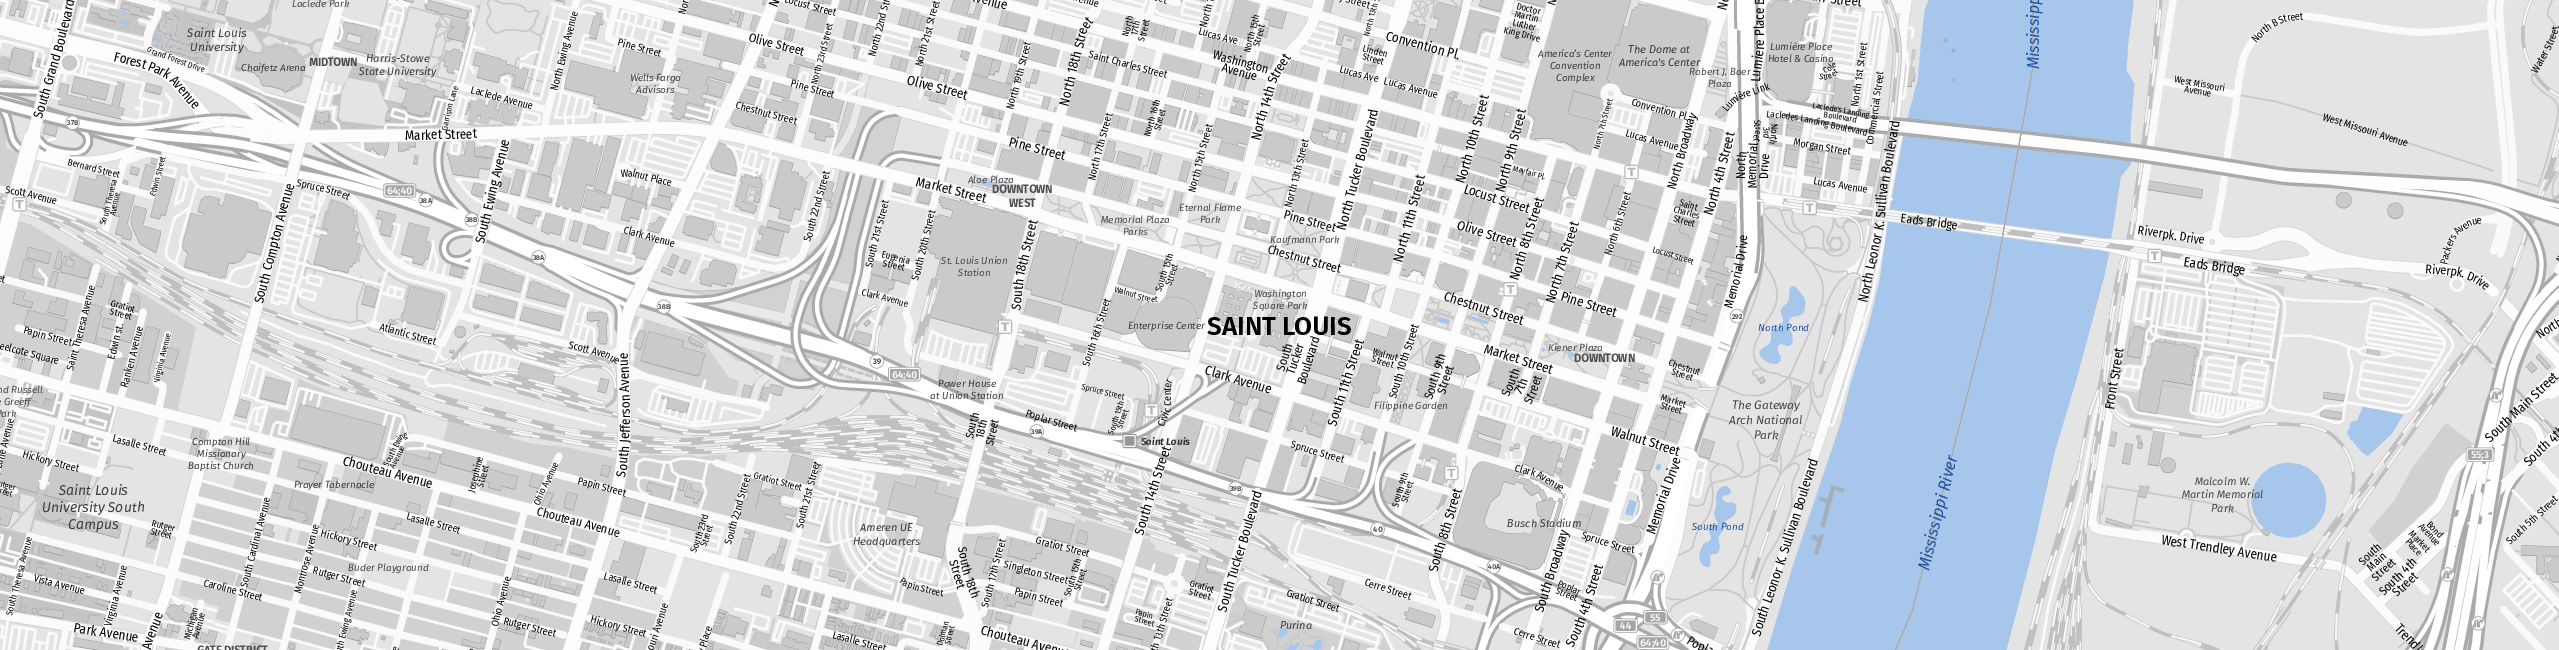 Stadtplan St. Louis zum Downloaden.